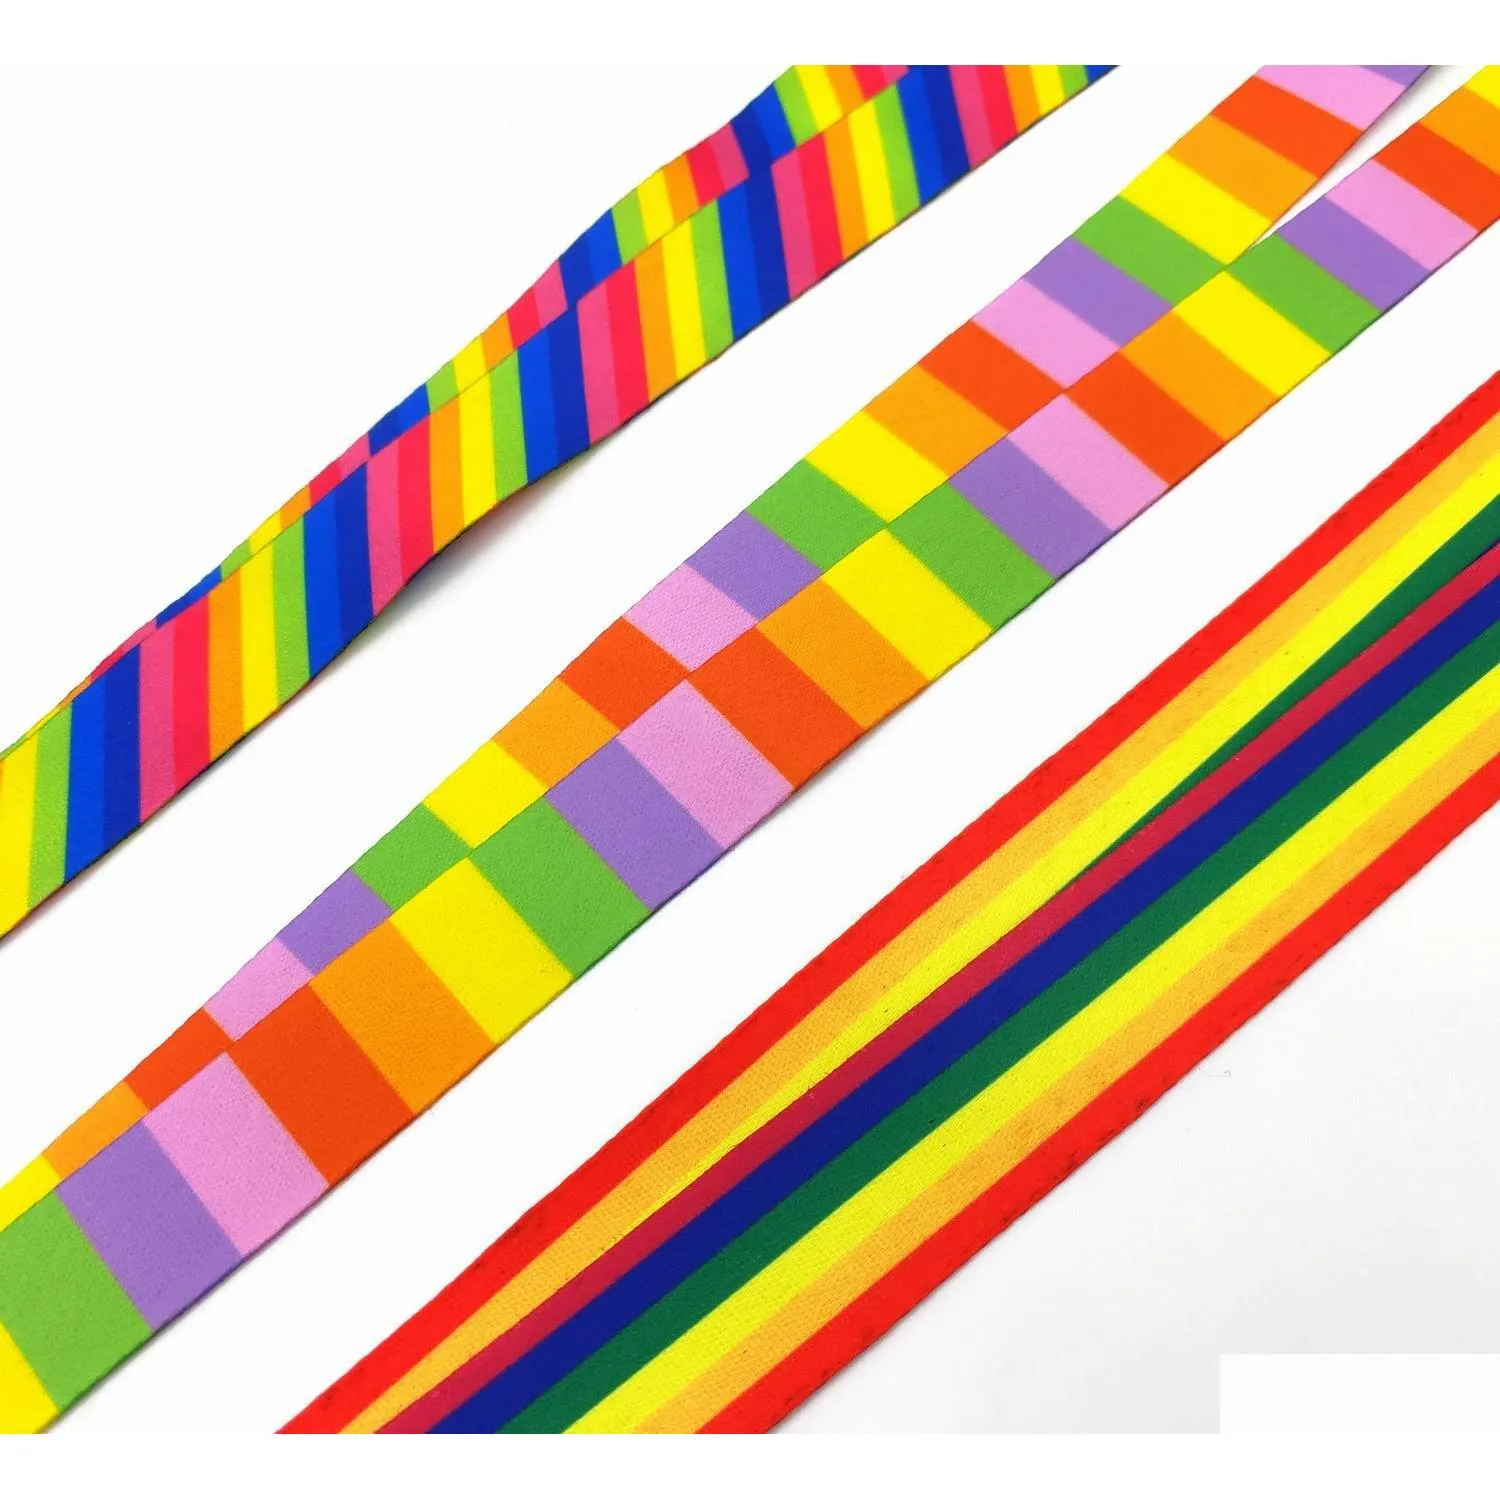 Strapy z telefonu komórkowego Uroks Hurtowa 20pcs Rainbow Color Wzór kreskówkowy mobilny smycz smycz łańcuch identyfikator Id Id.